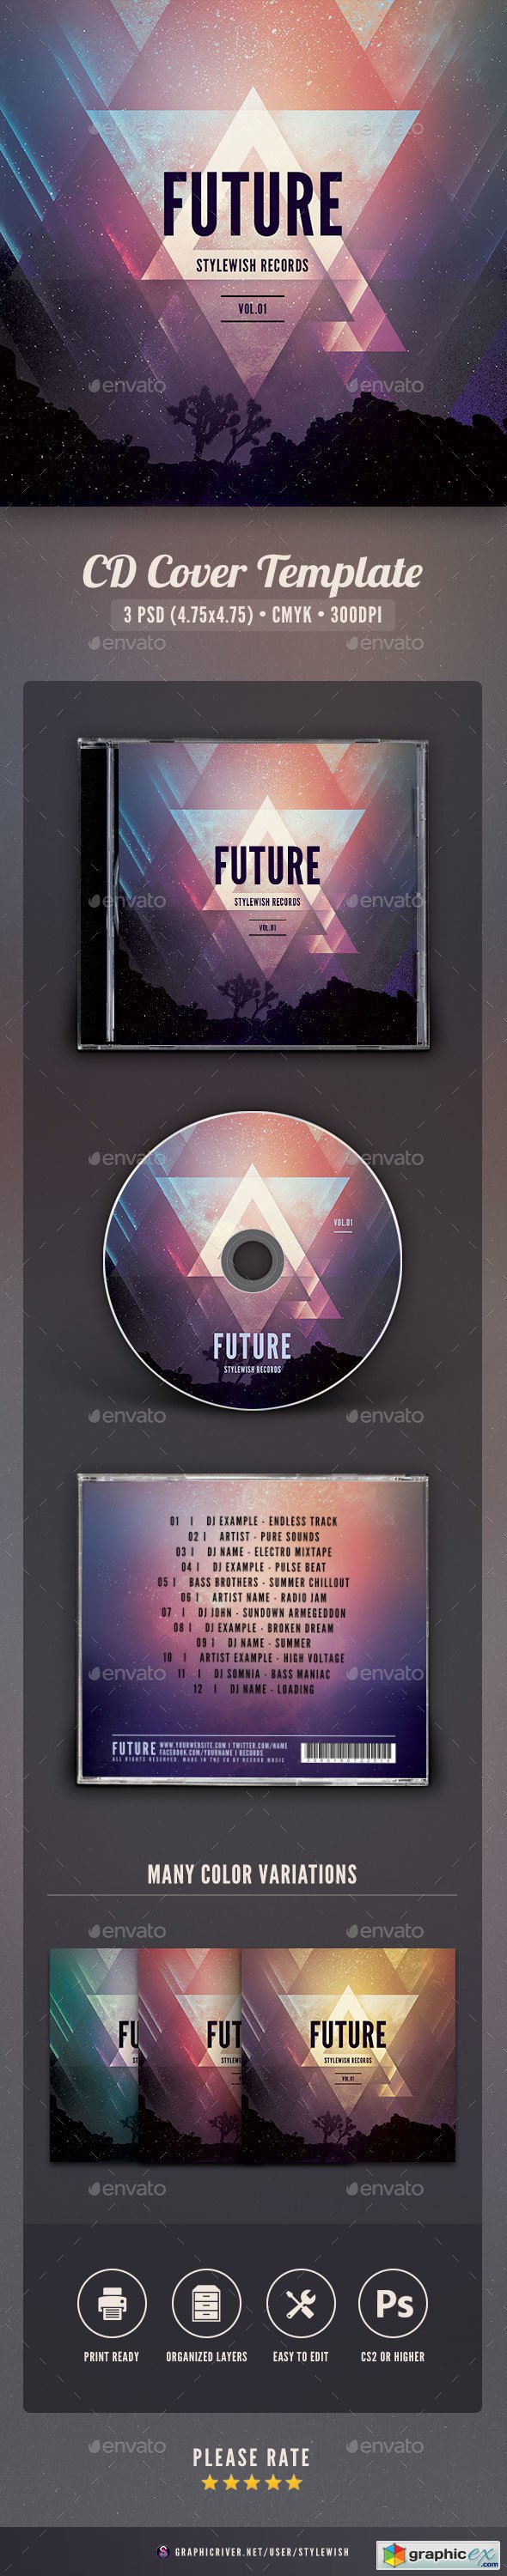 Futuristic CD Cover Artwork